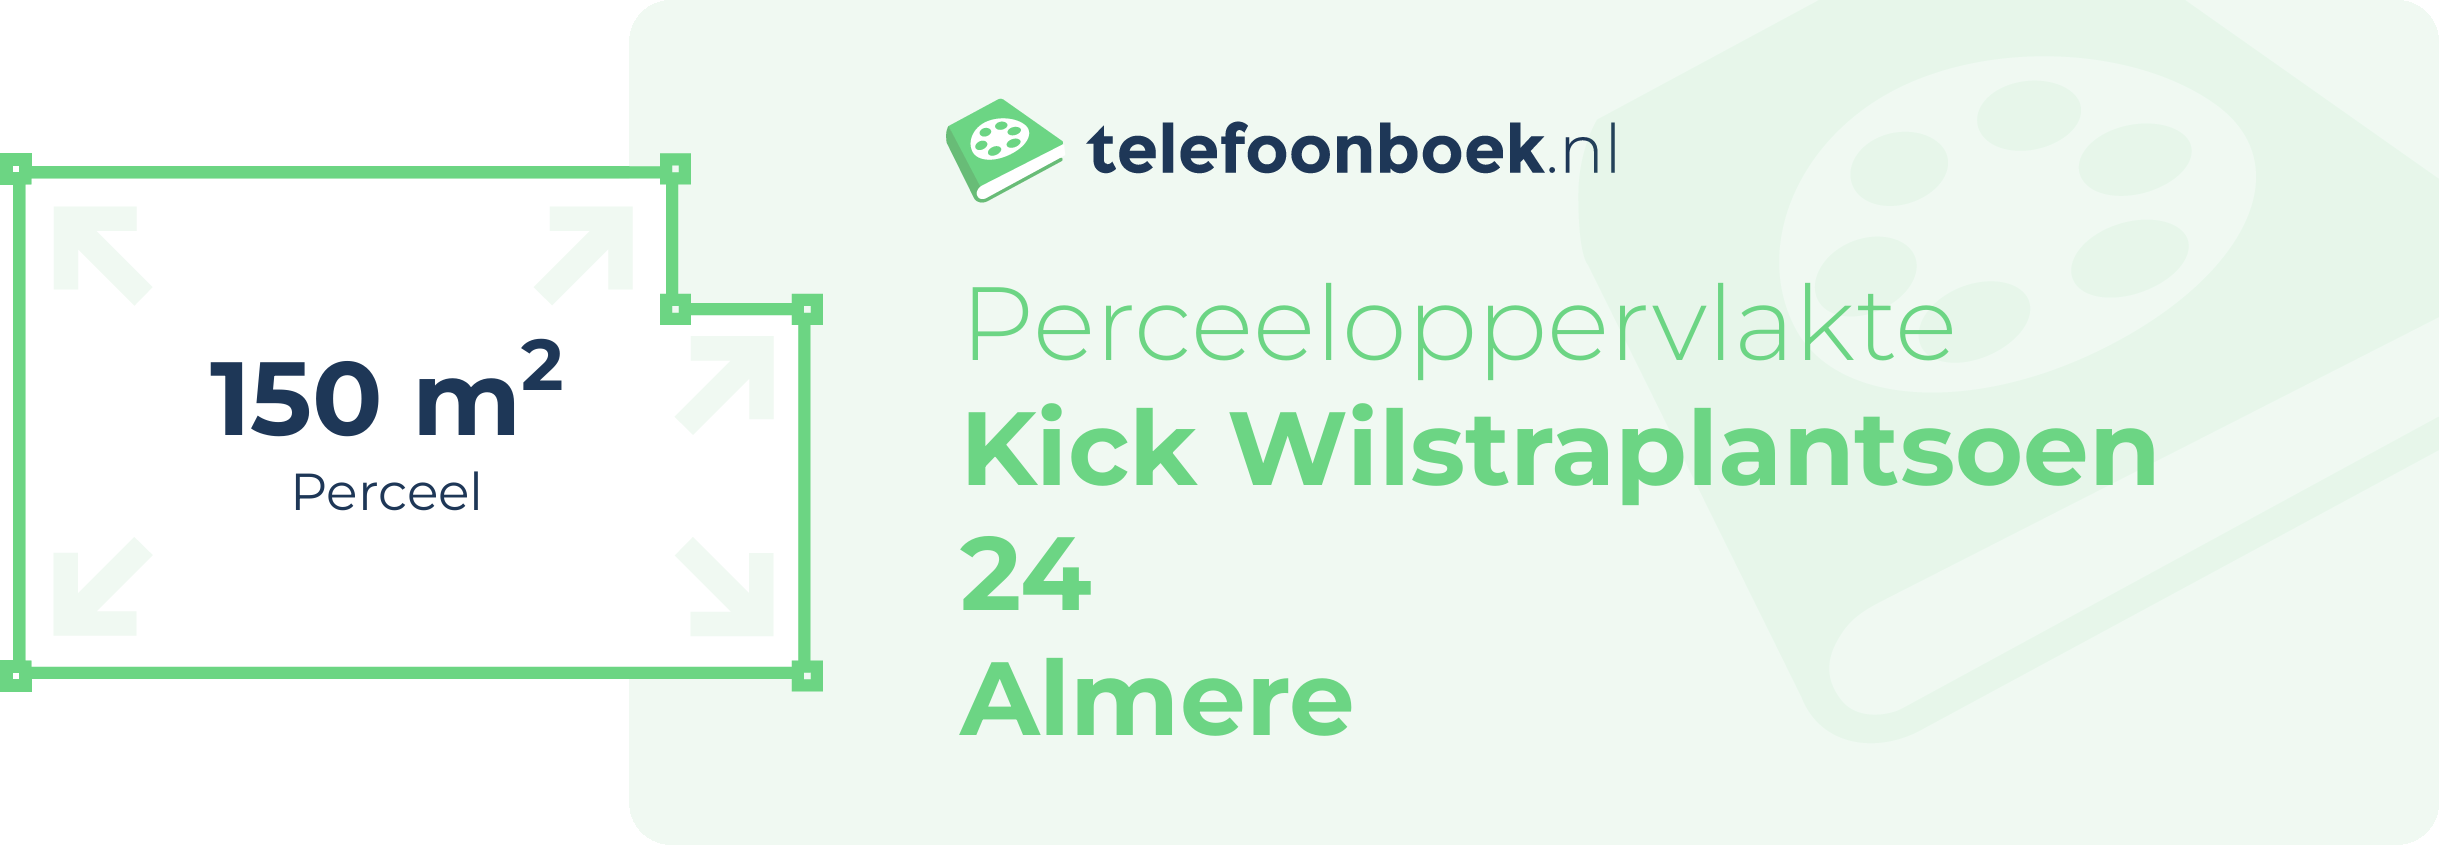 Perceeloppervlakte Kick Wilstraplantsoen 24 Almere